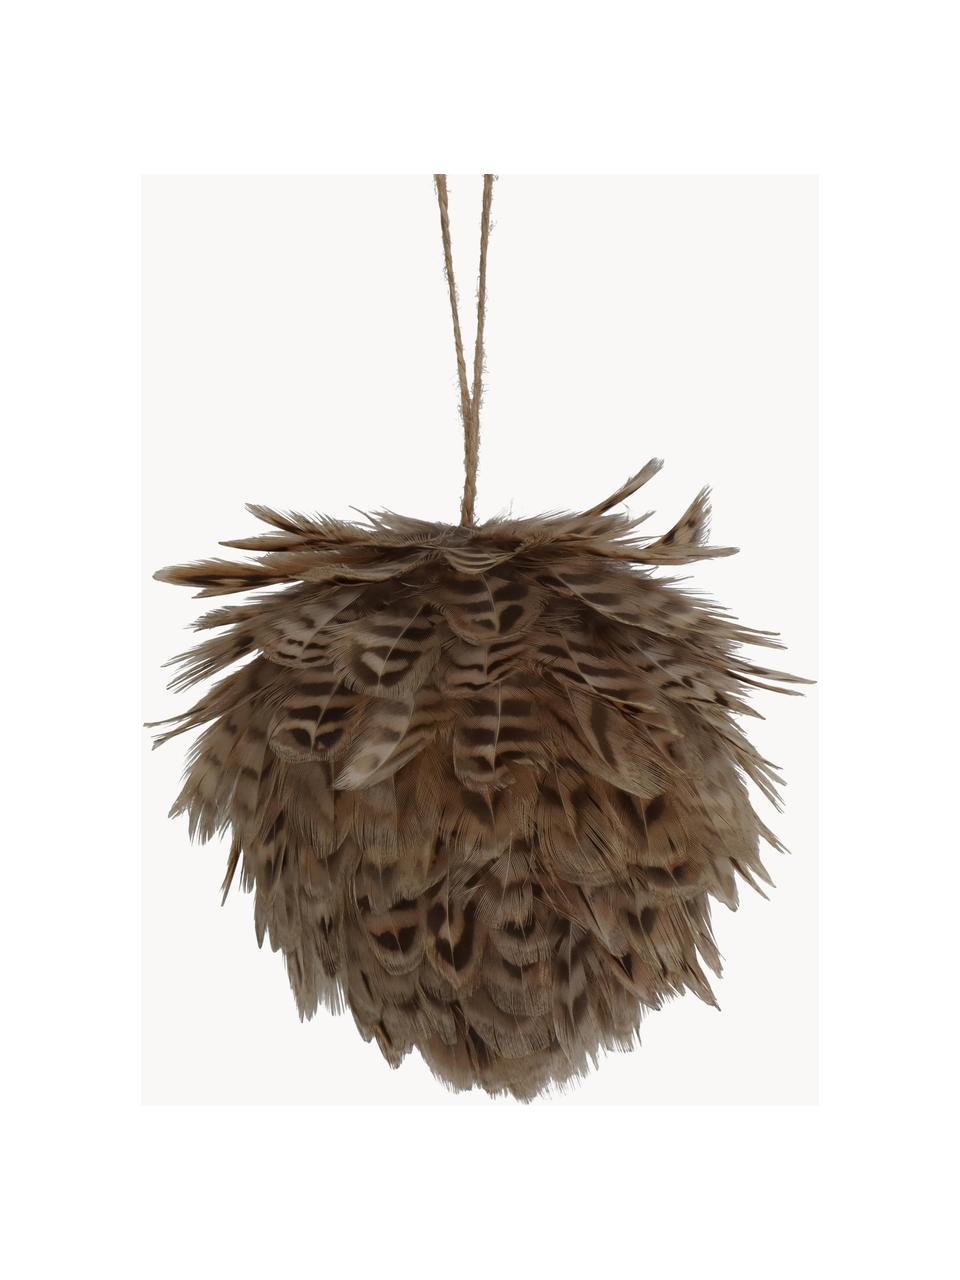 Ozdoba choinkowa Feather Ball, 2 szt., Pióra, Odcienie brązowego, Ø 11 cm